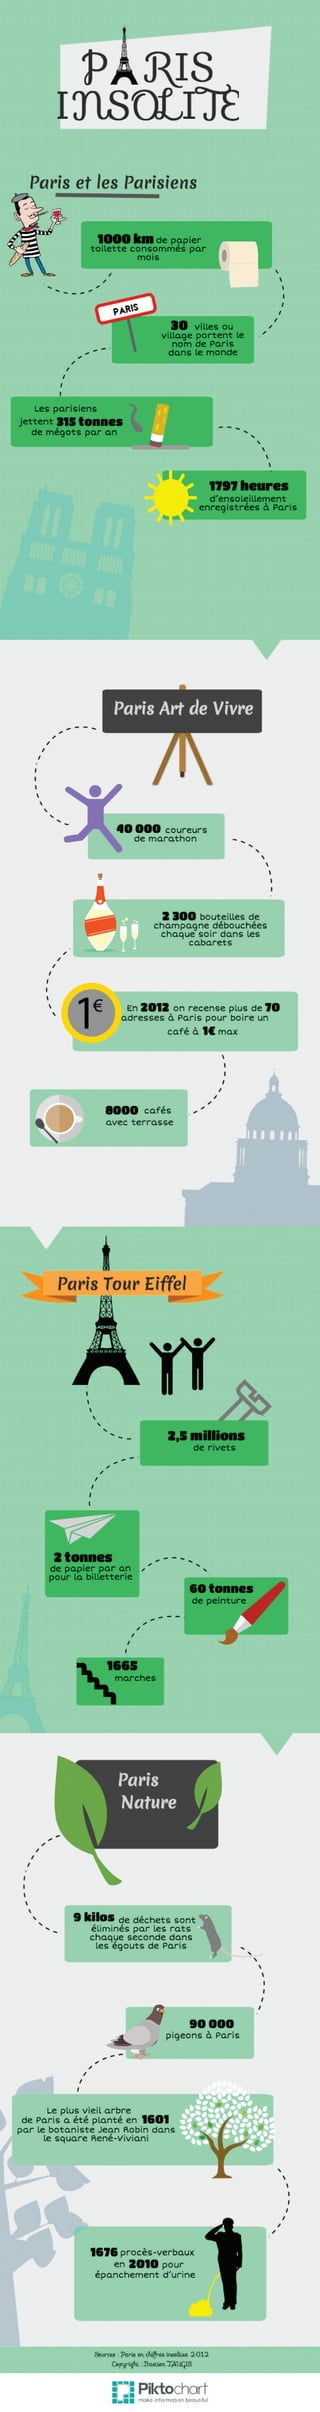 Infographie " Paris Insolite " réalisée par Bastien TAUGIS